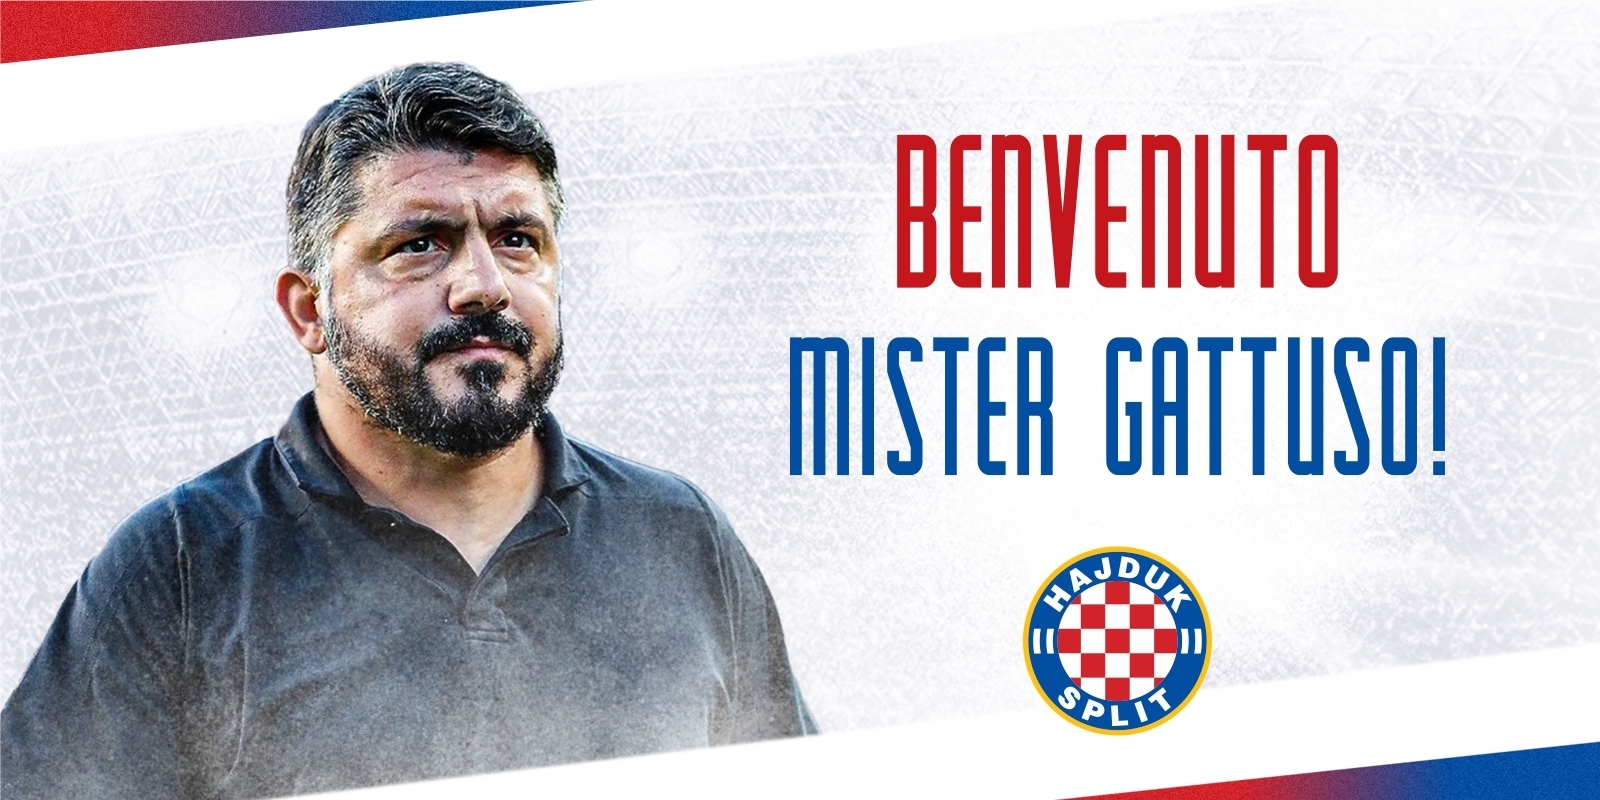 Gennaro Gattuso je novi trener Hajduka